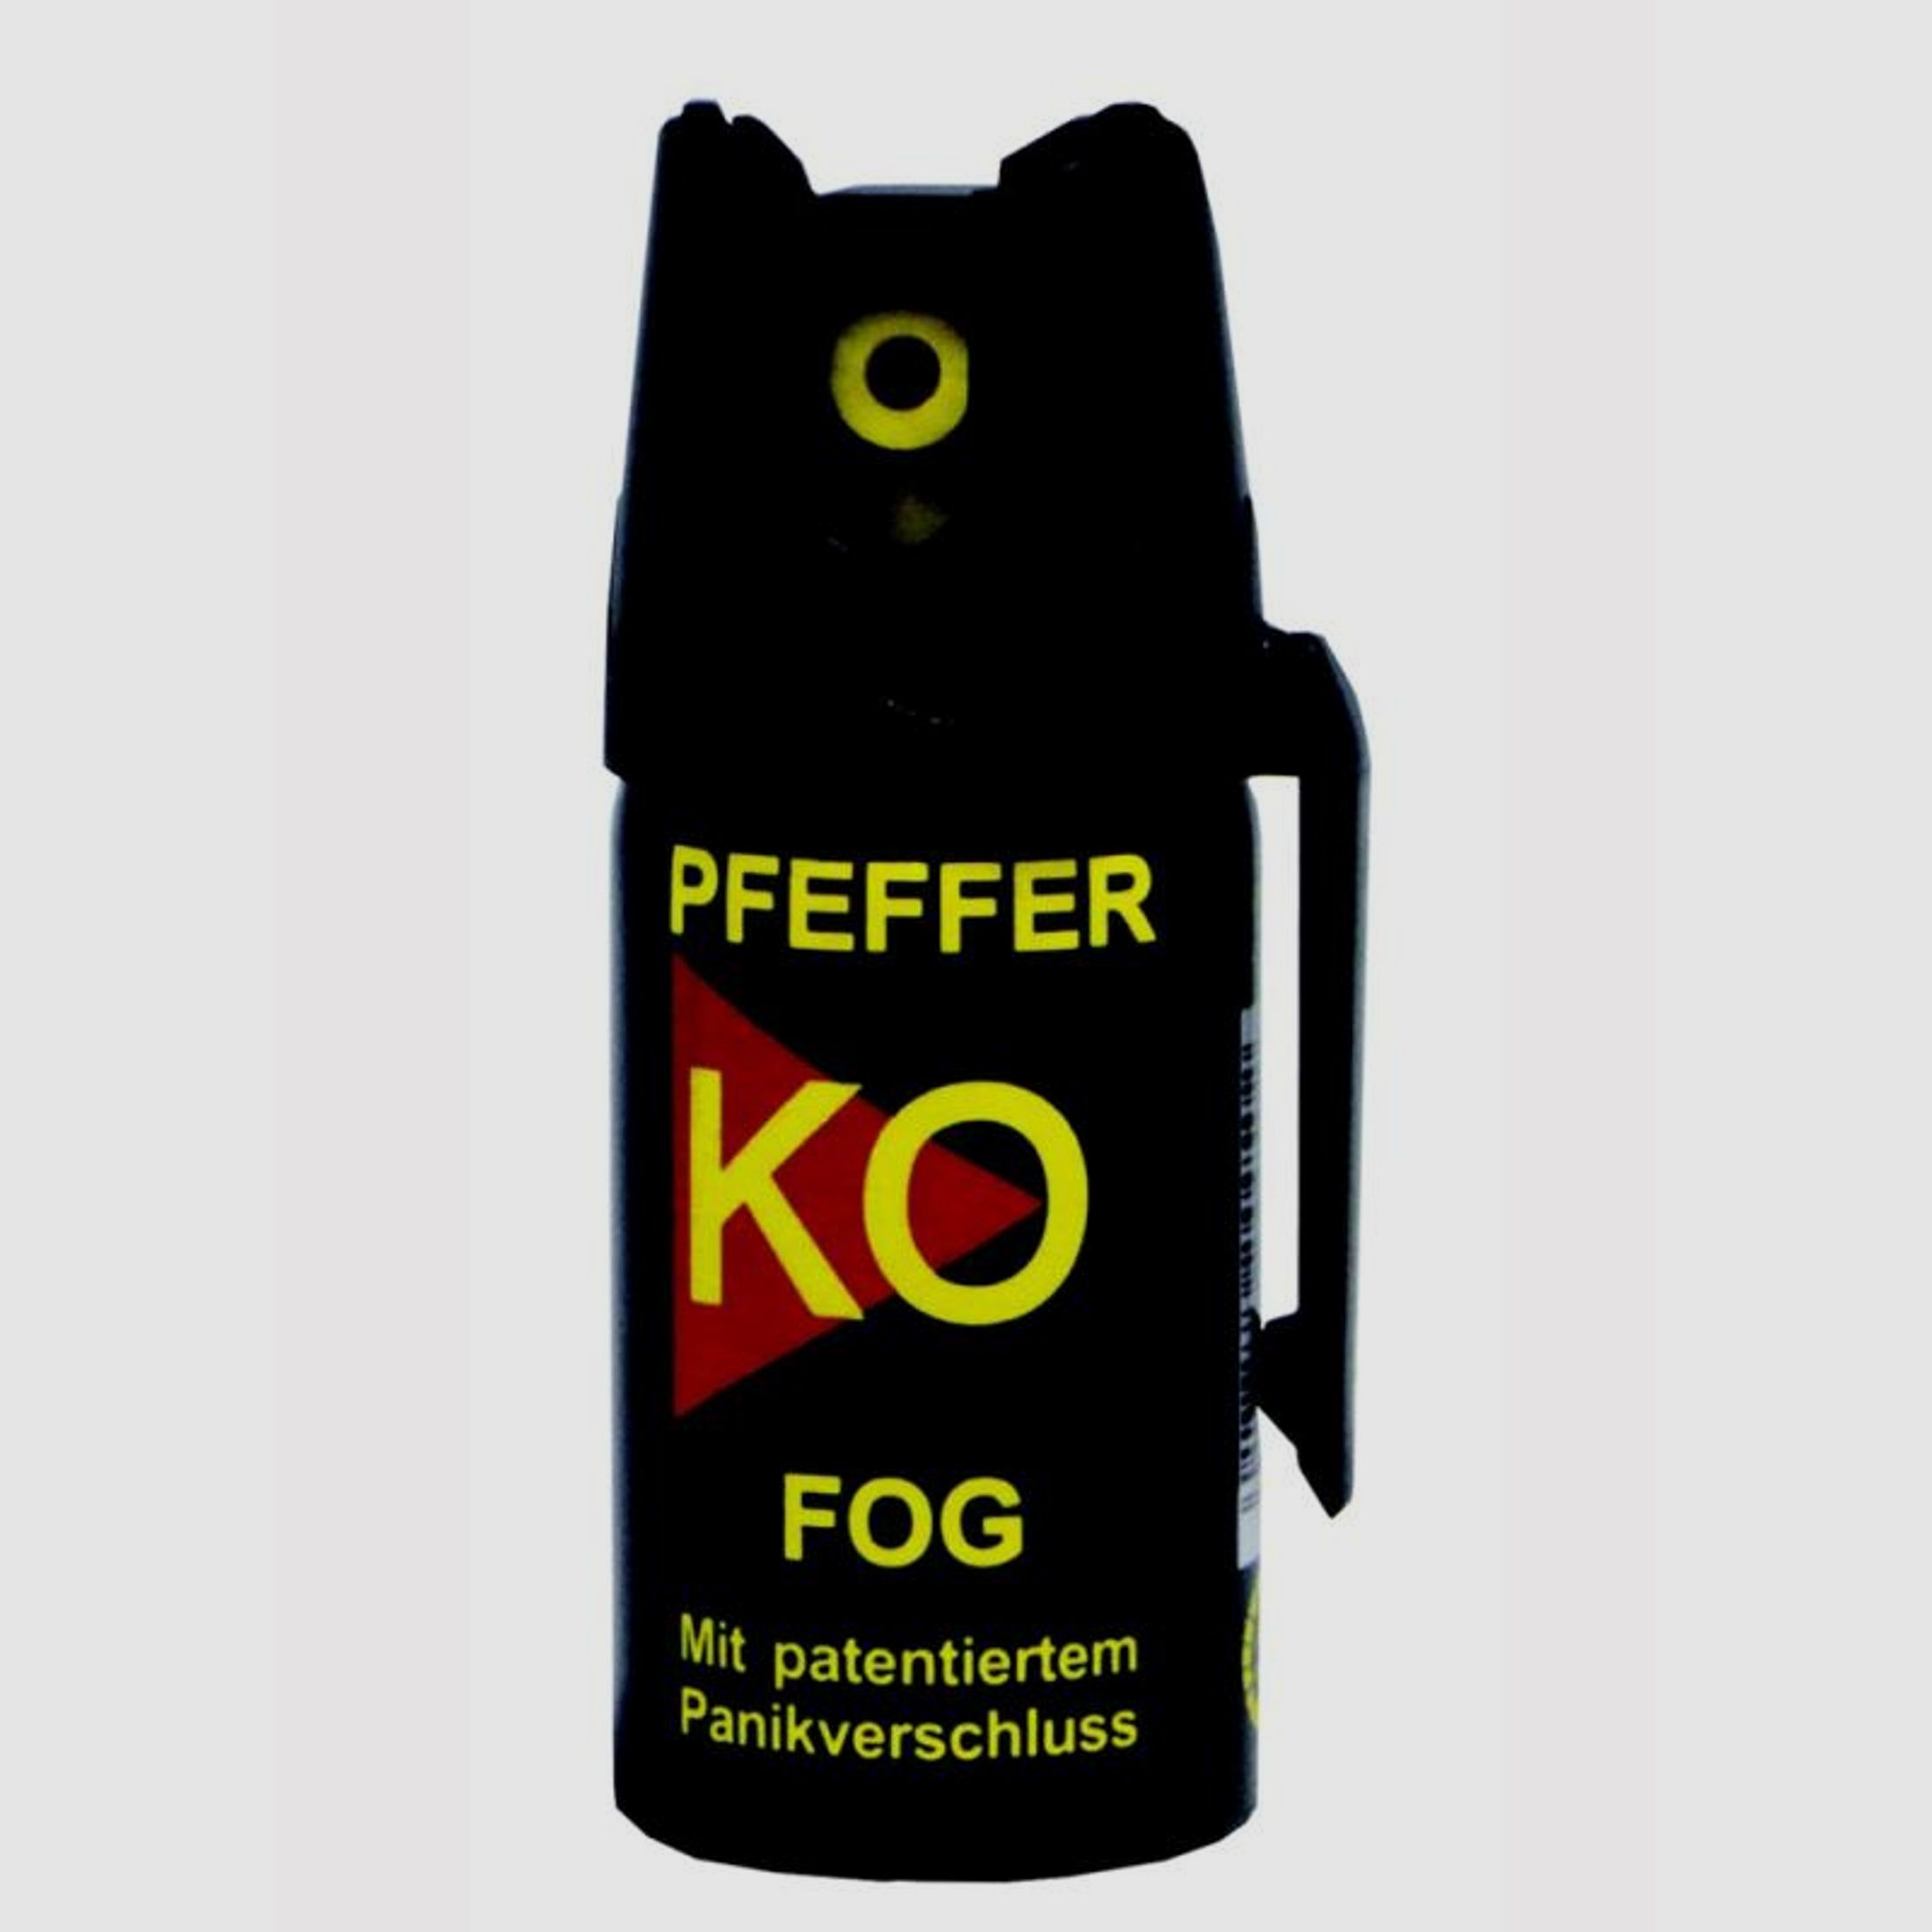 Pfeffer-Spray K.O. Fog (Sprühnebel) - 40ml